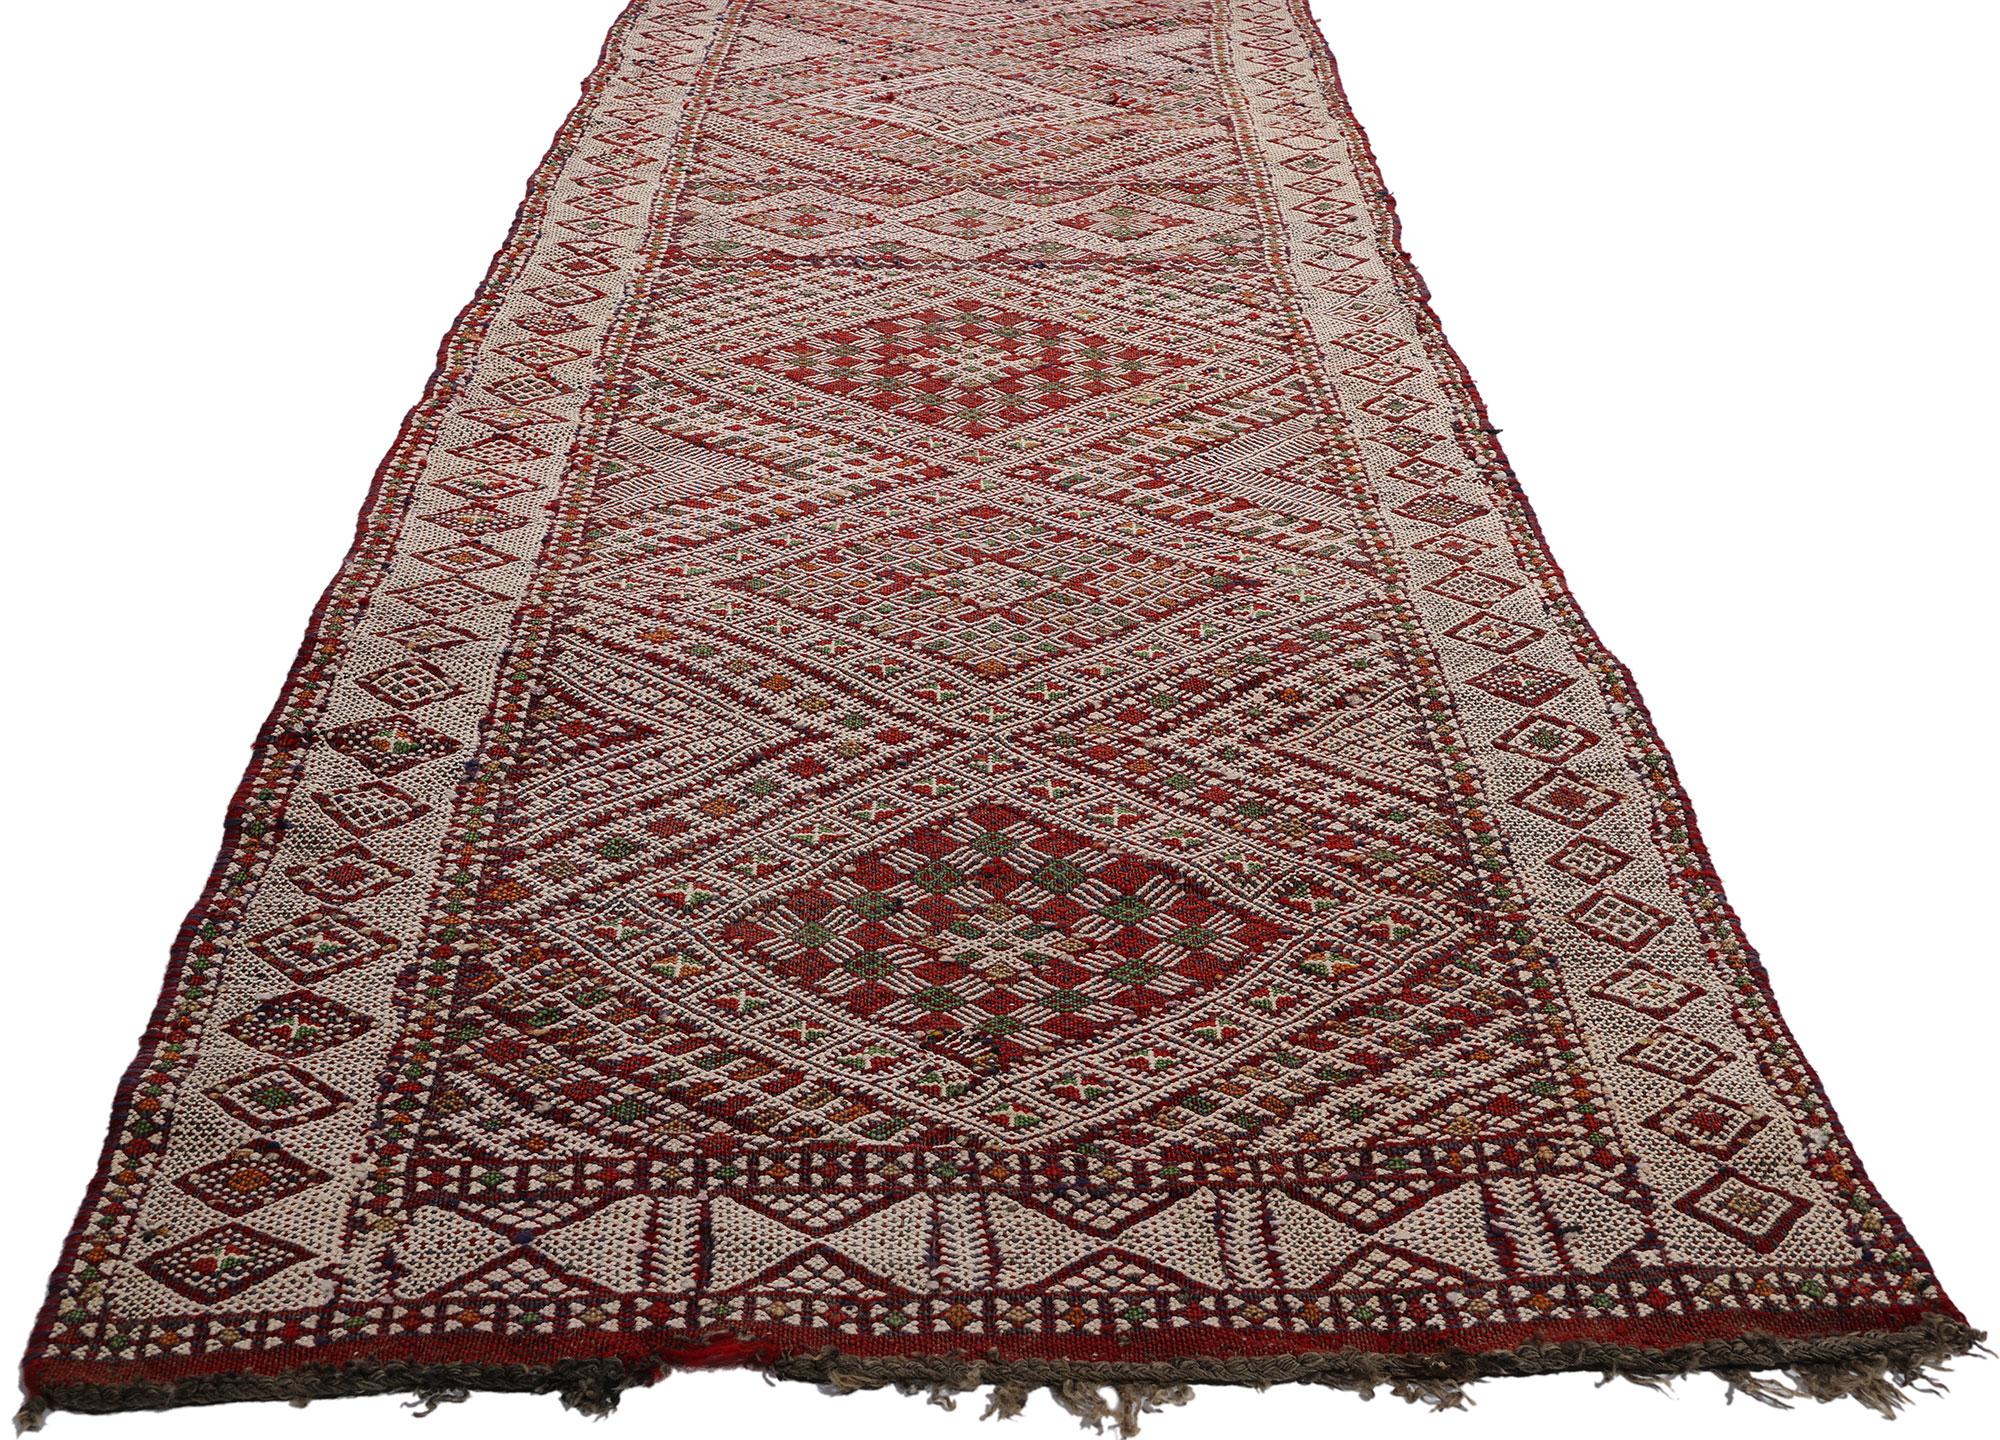 21844 Vintage Zemmour Marokkanischer Hanbel-Teppich, 02'09 x 23'10. Wir stellen unseren exquisiten Hanbel-Teppich aus handgewebter Wolle vor, einen fesselnden, extralangen marokkanischen Kelim-Läufer, der von den geschickten Kunsthandwerkern des